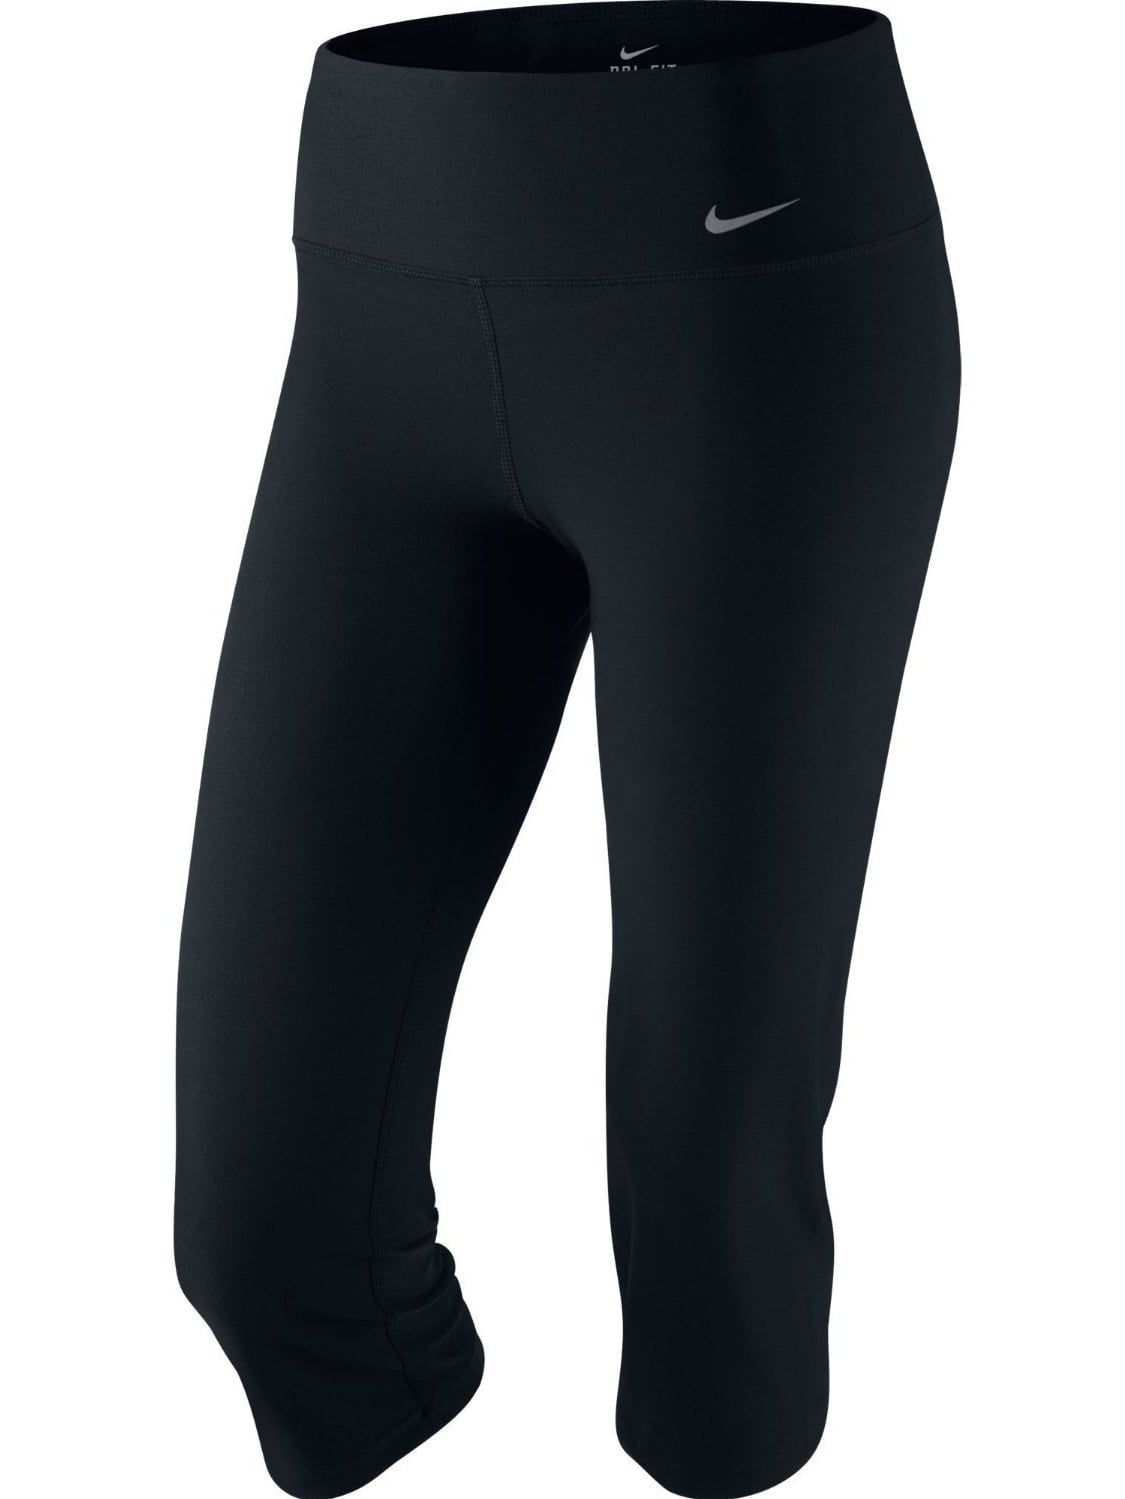 Nike Women's Dri-Fit Slim Fit Training Capris-Black - Walmart.com